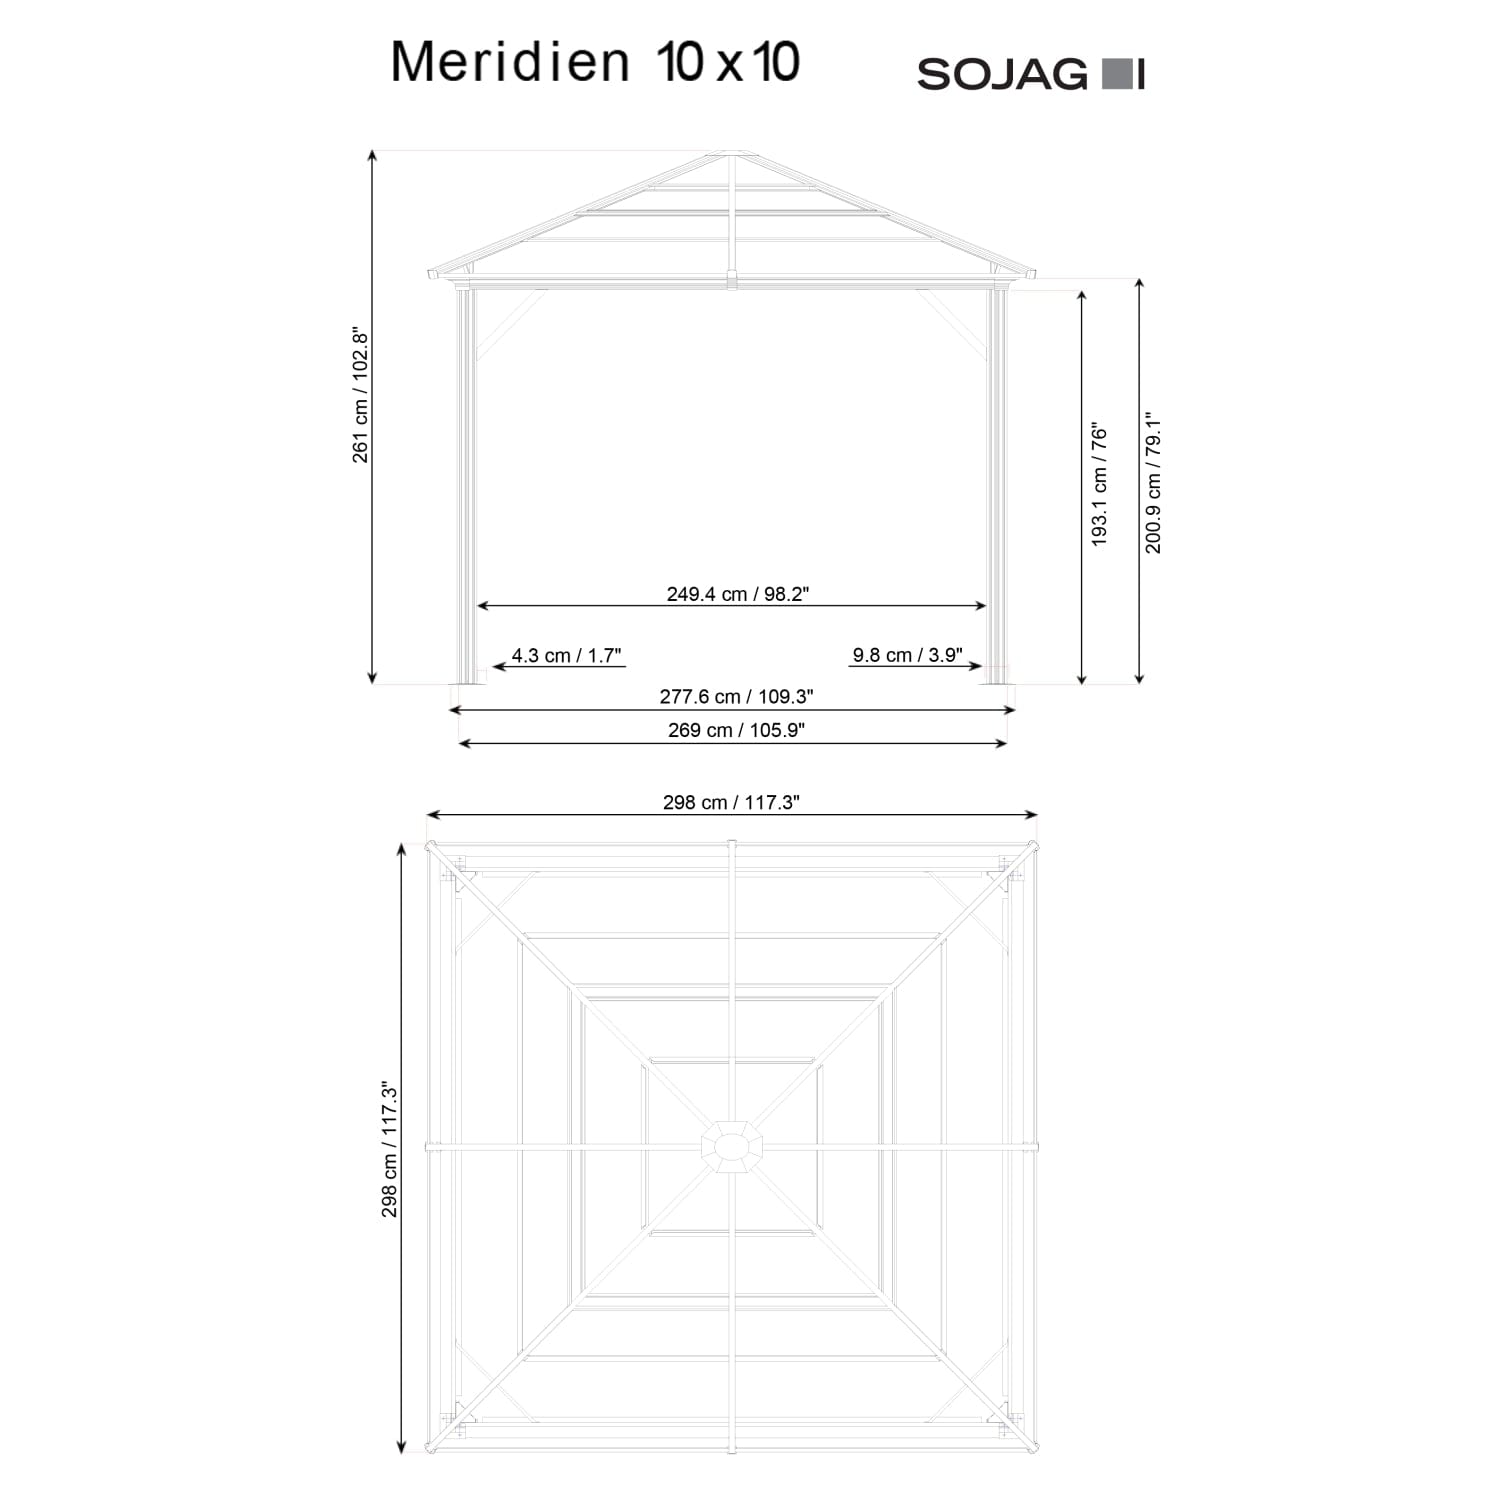 SOJAG Gazebo Sojag | Meridien 10 ft. x 10 ft. Gazebo - Charcoal 500-9168389